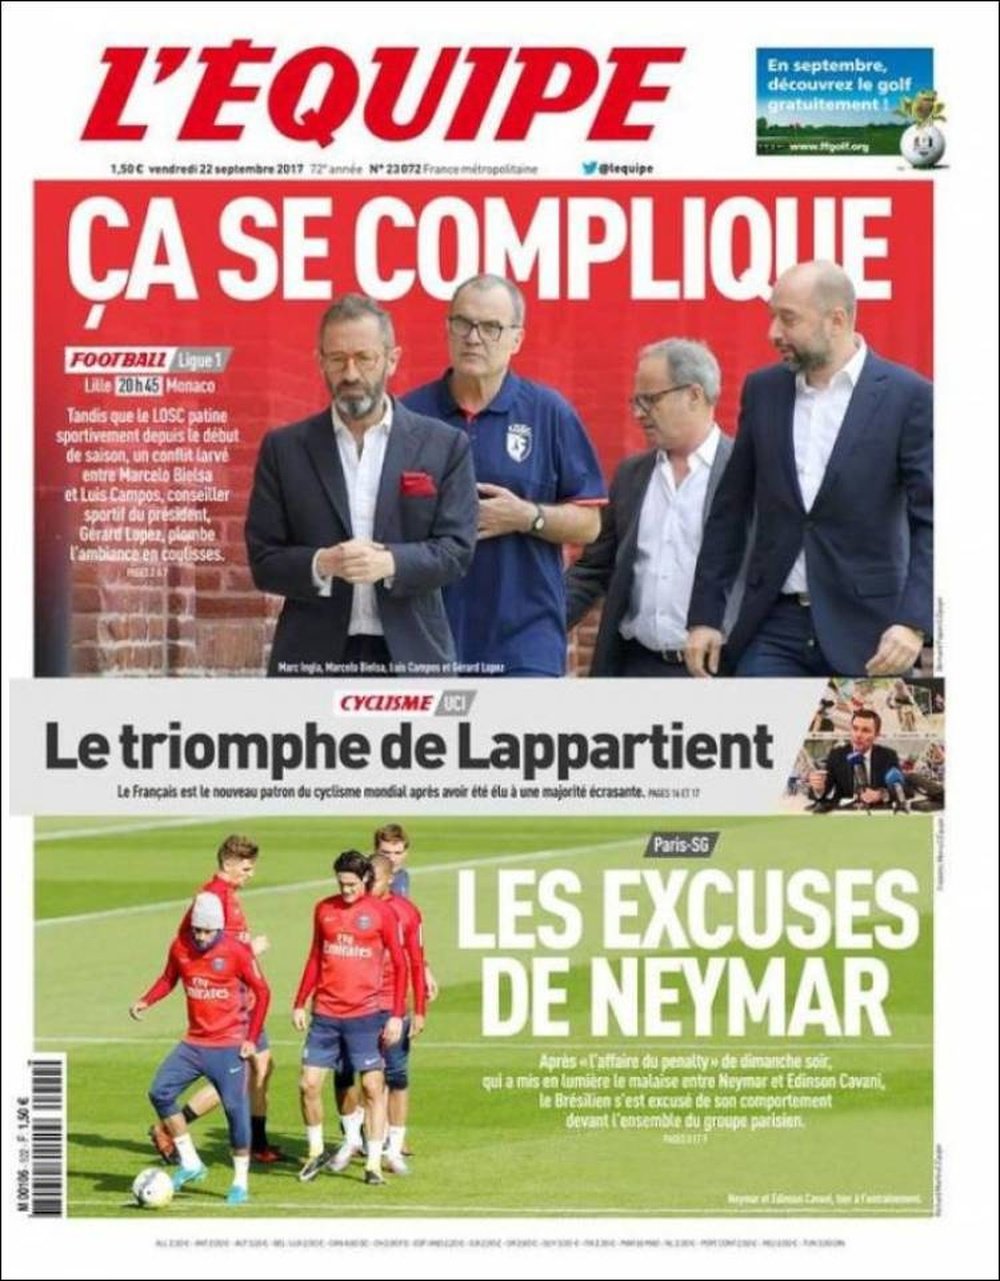 La Une du quotidien sportif français 'L'Équipe' du 22 septembre 2017. L'Équipe